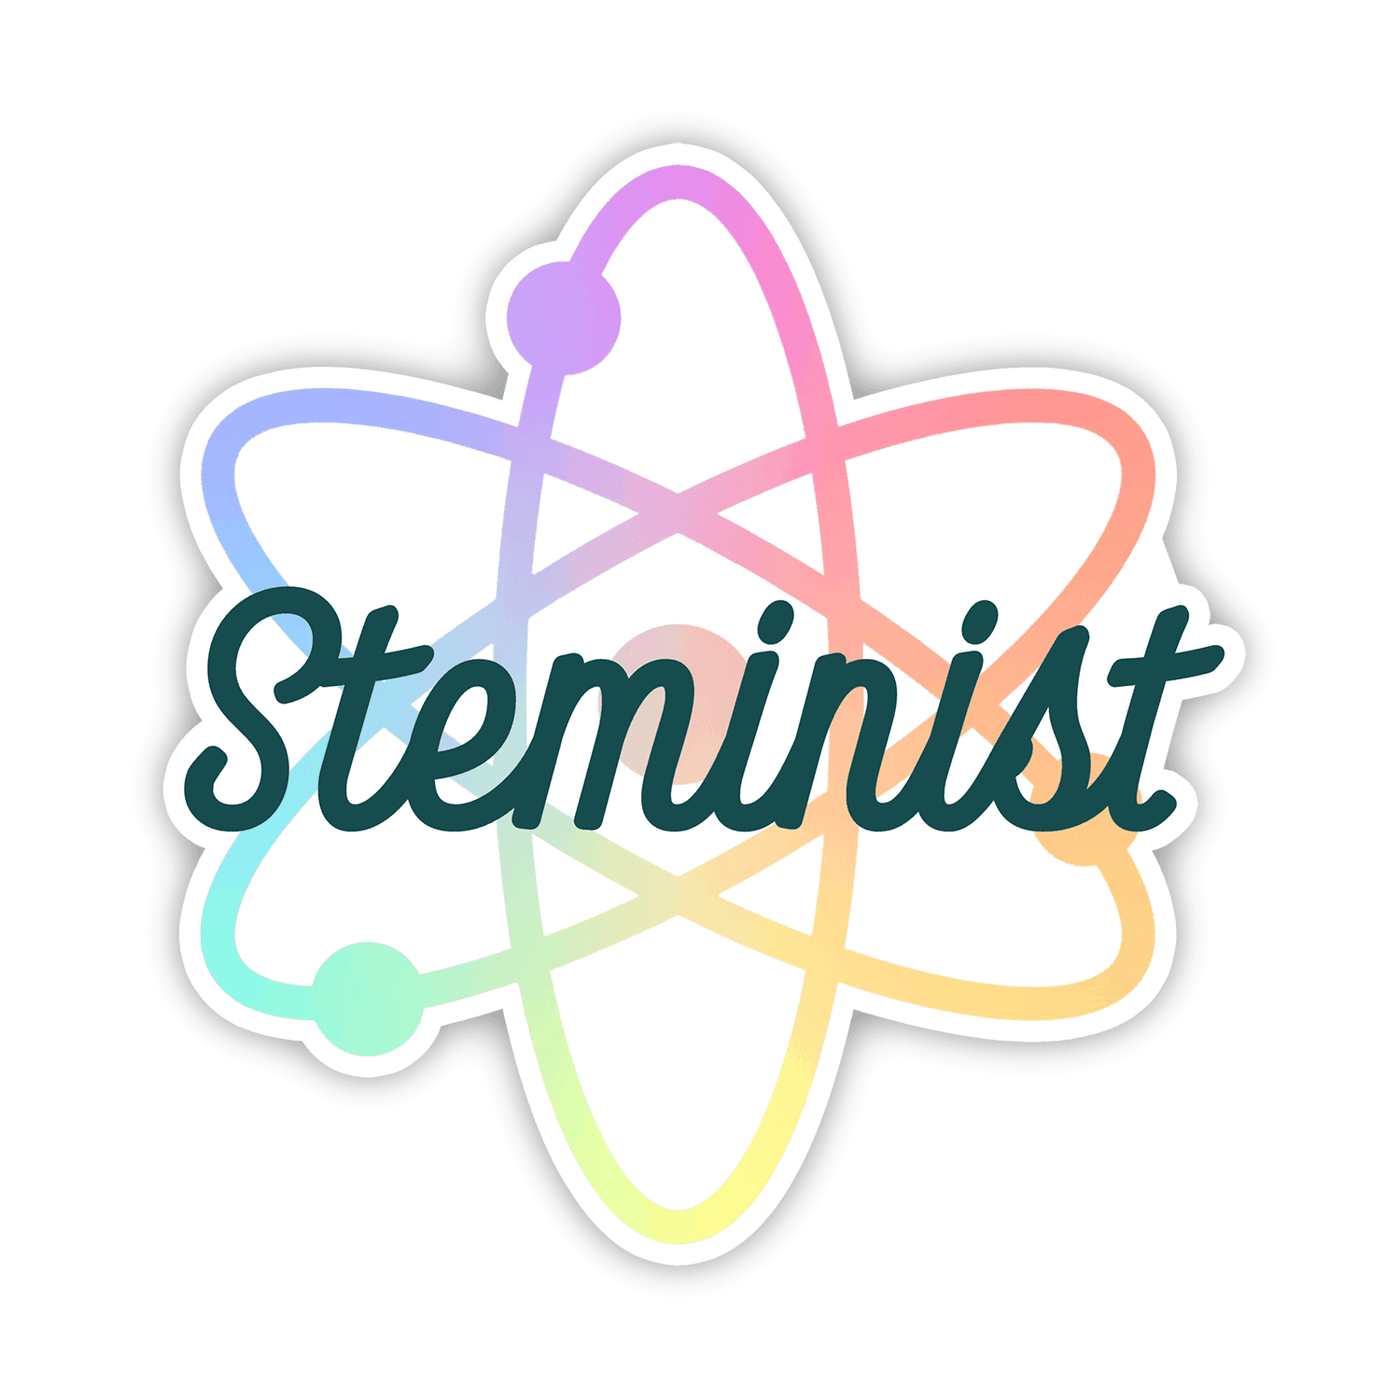 Steminist Atom - Vinyl Sticker